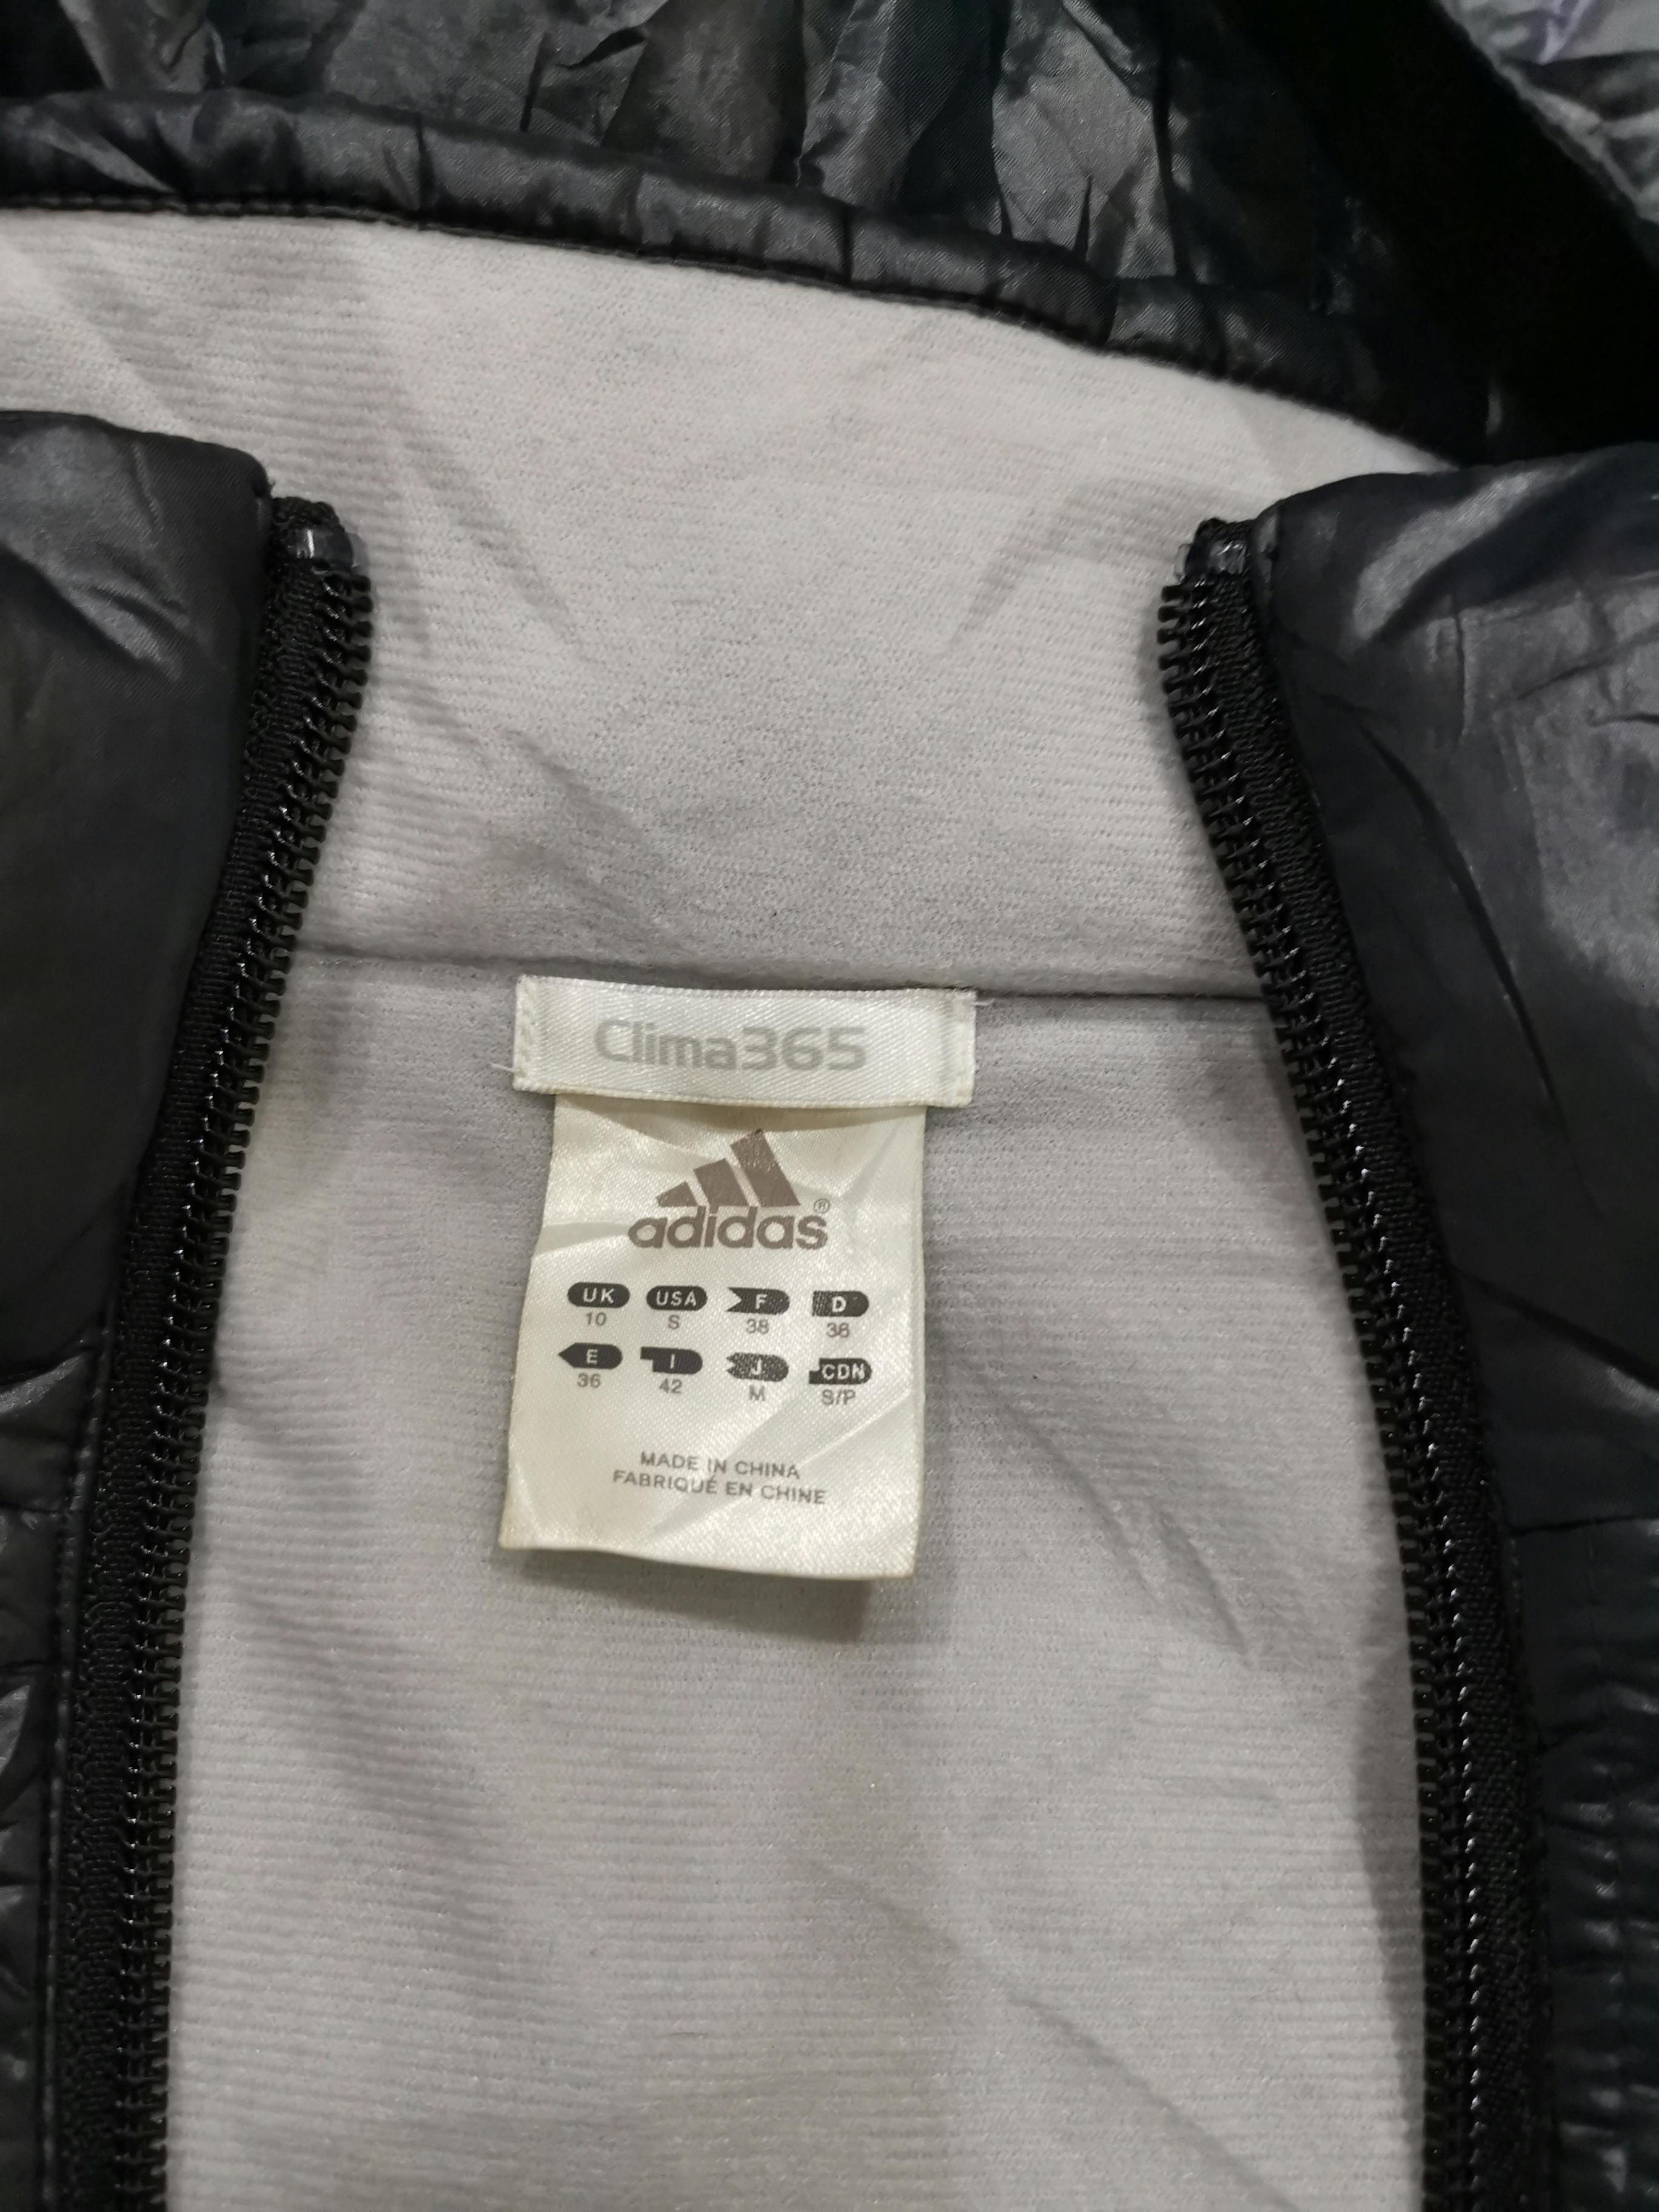 Adidas Long Jacket x Clima365 - 8